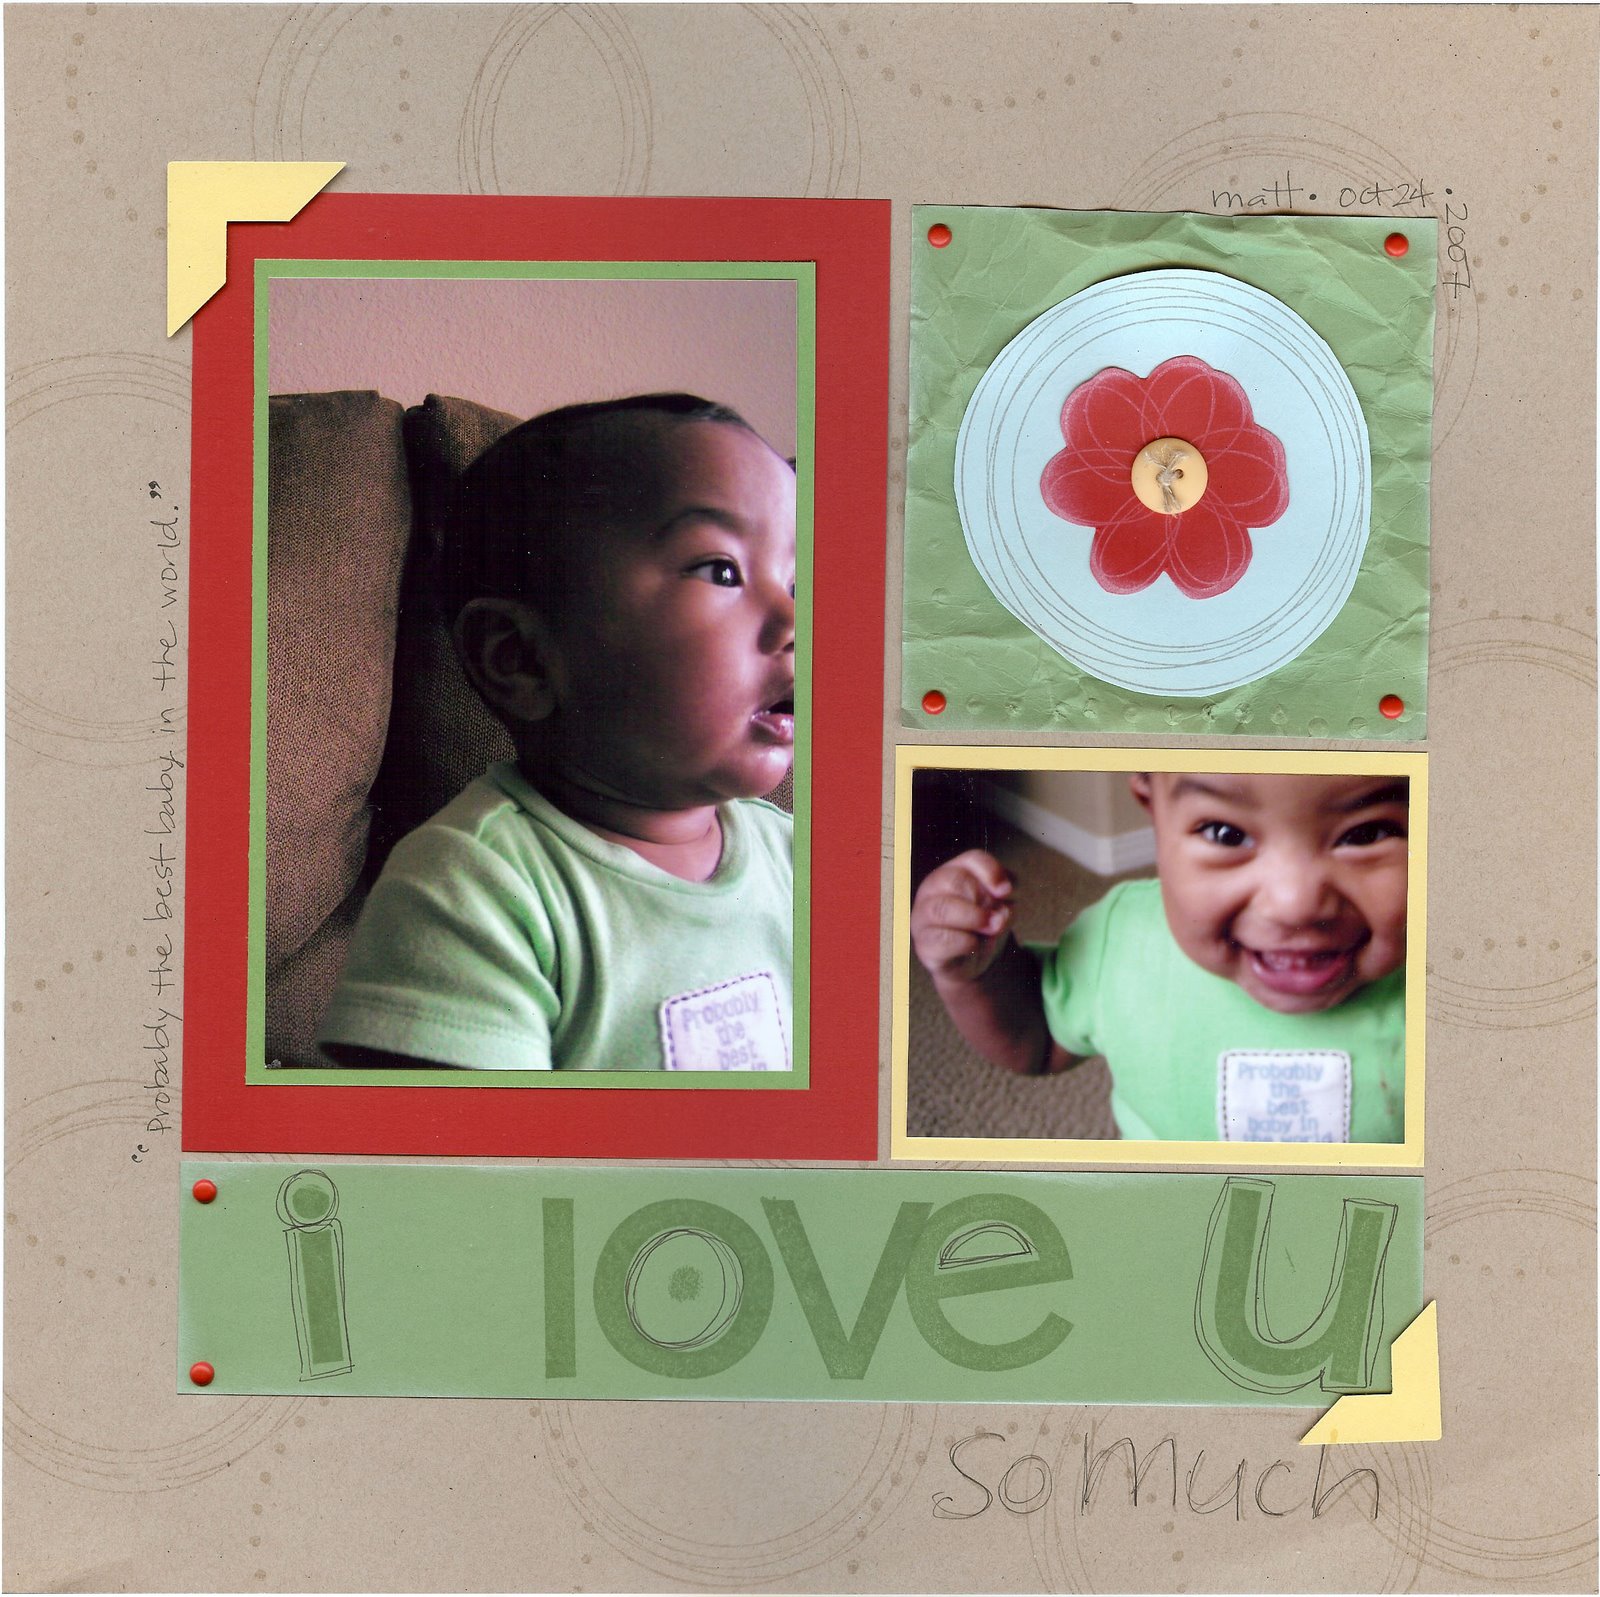 [I+Love+You+So+Much+SU+Regional+LO+2008.jpg]